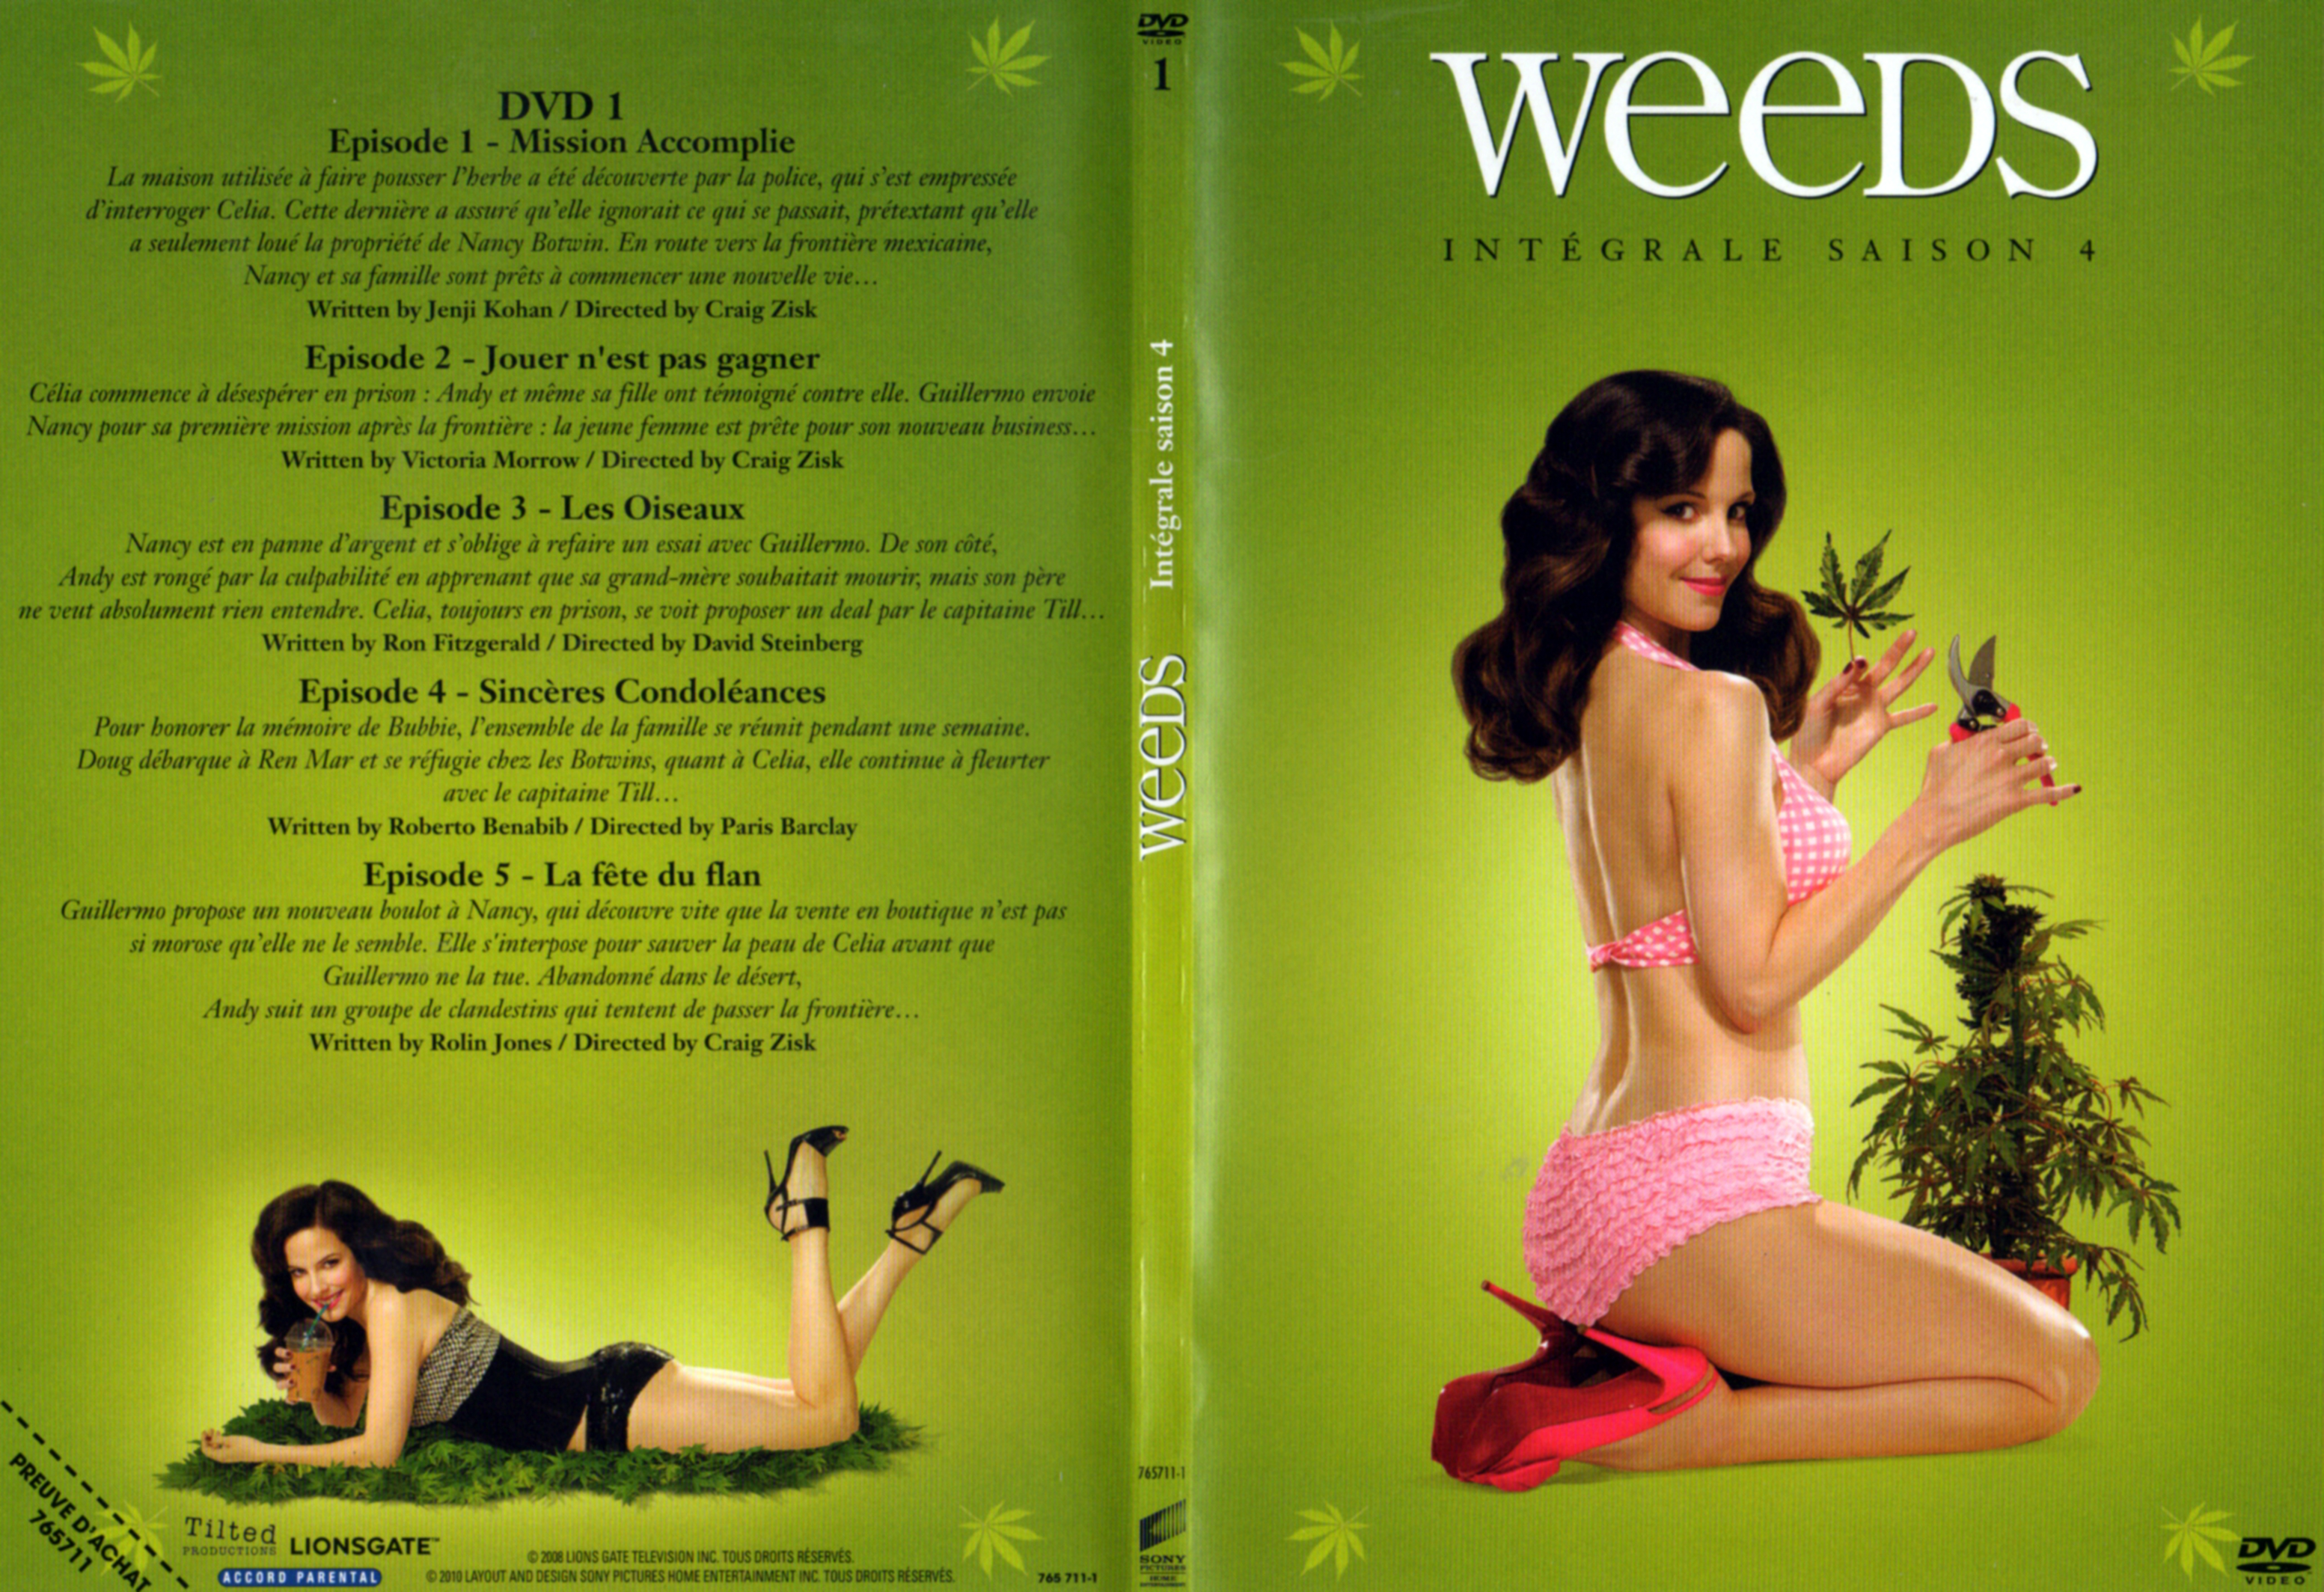 Jaquette DVD Weeds Saison 4 DVD 1